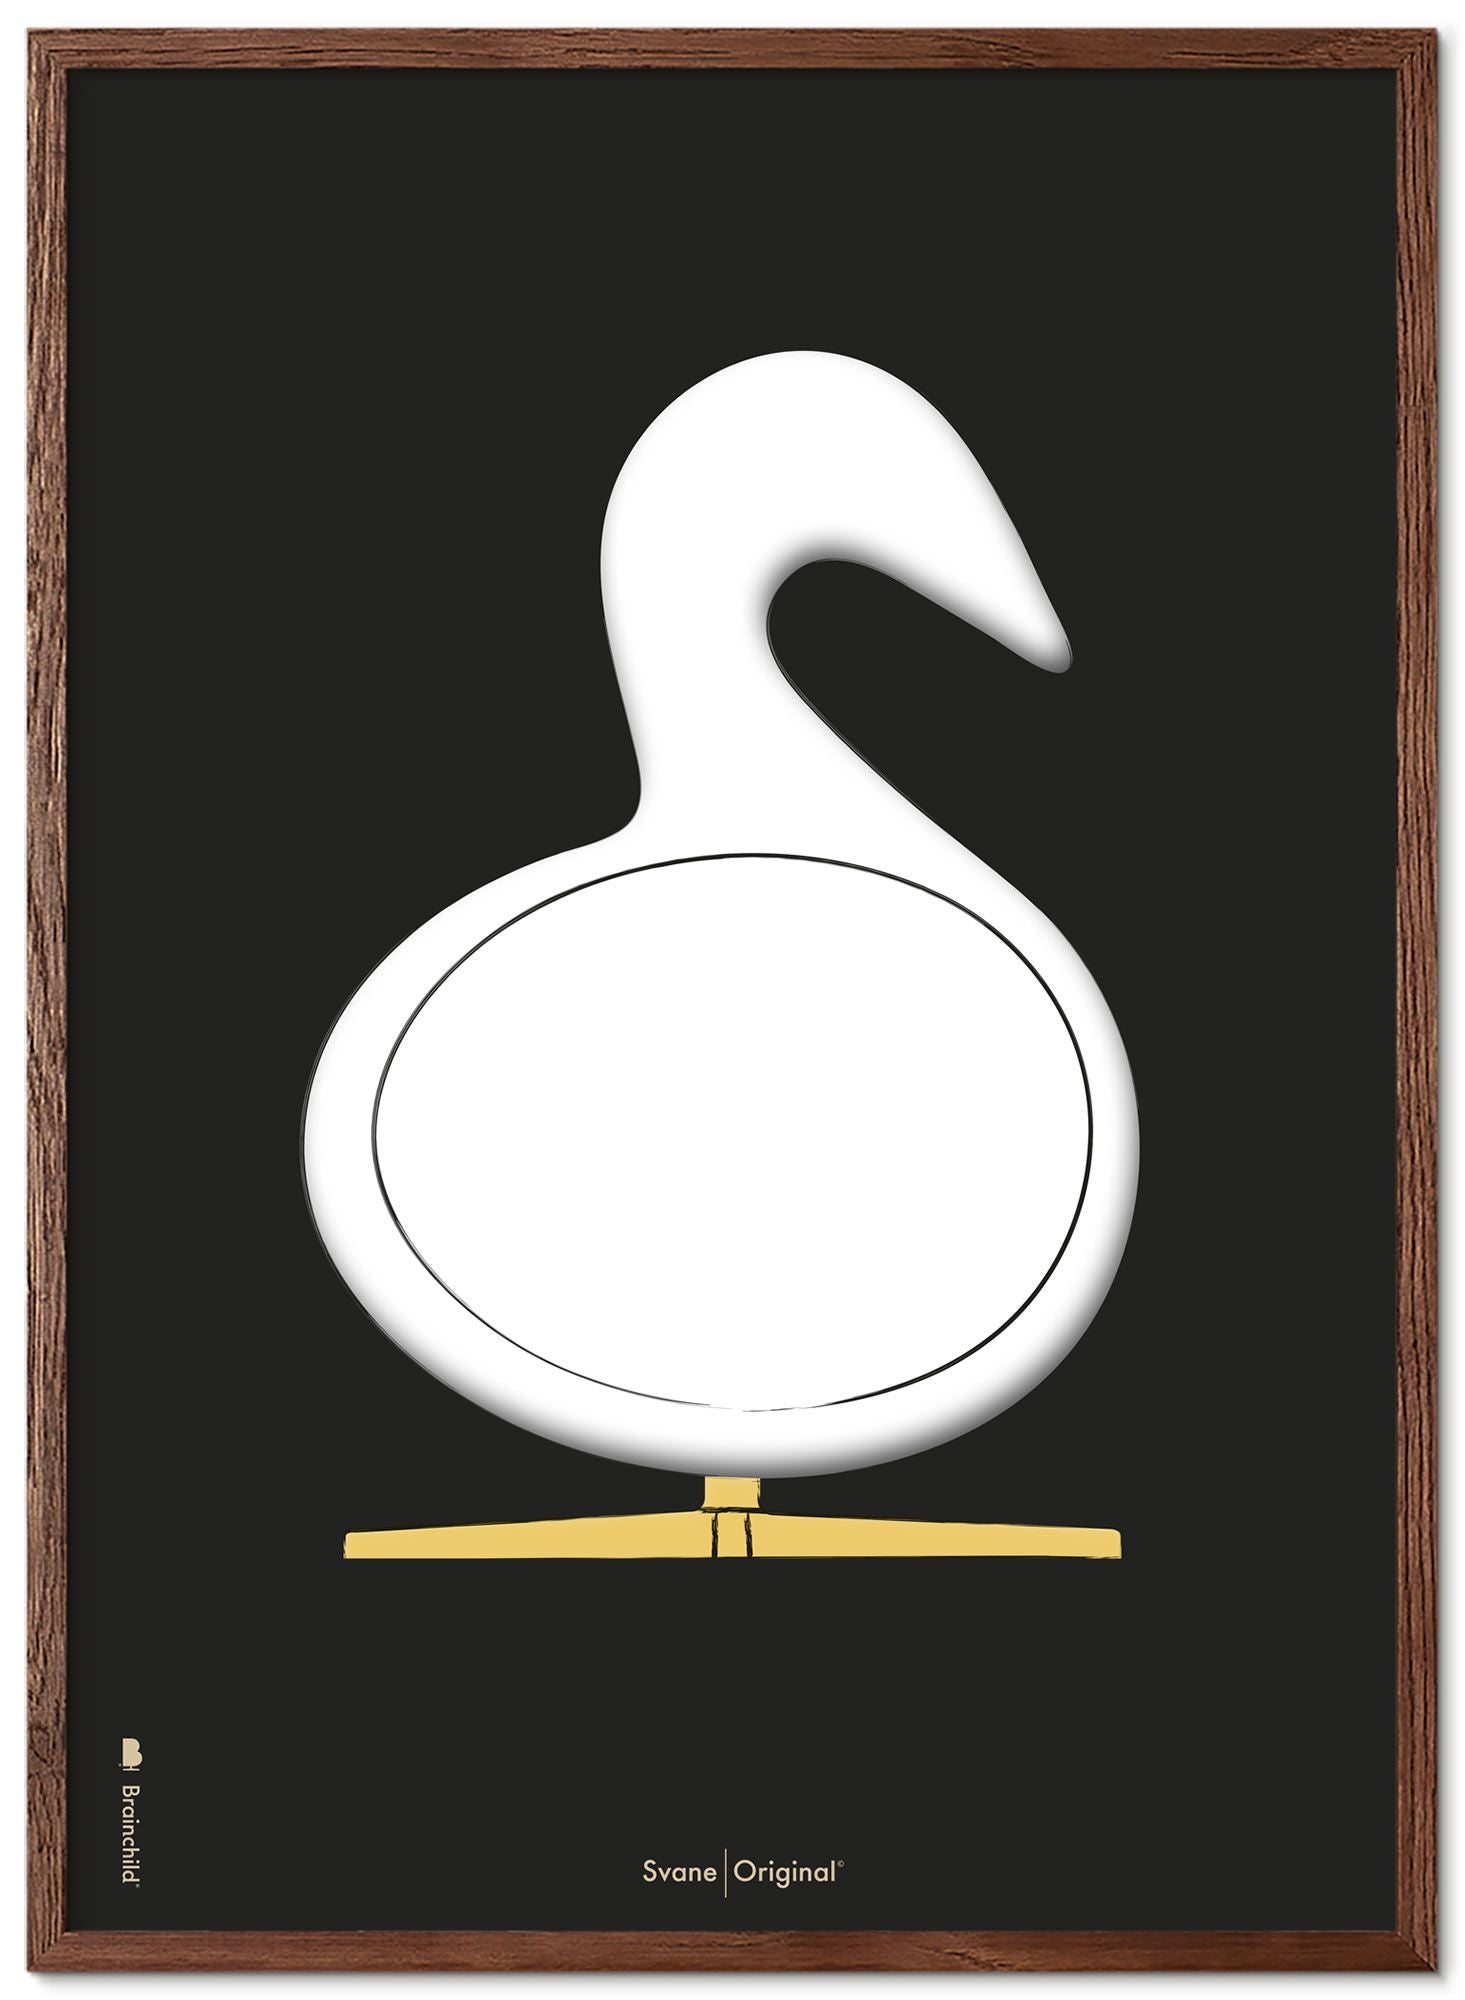 Schema poster di schizzo del disegno del cigno da gioco realizzato in legno scuro A5, sfondo nero